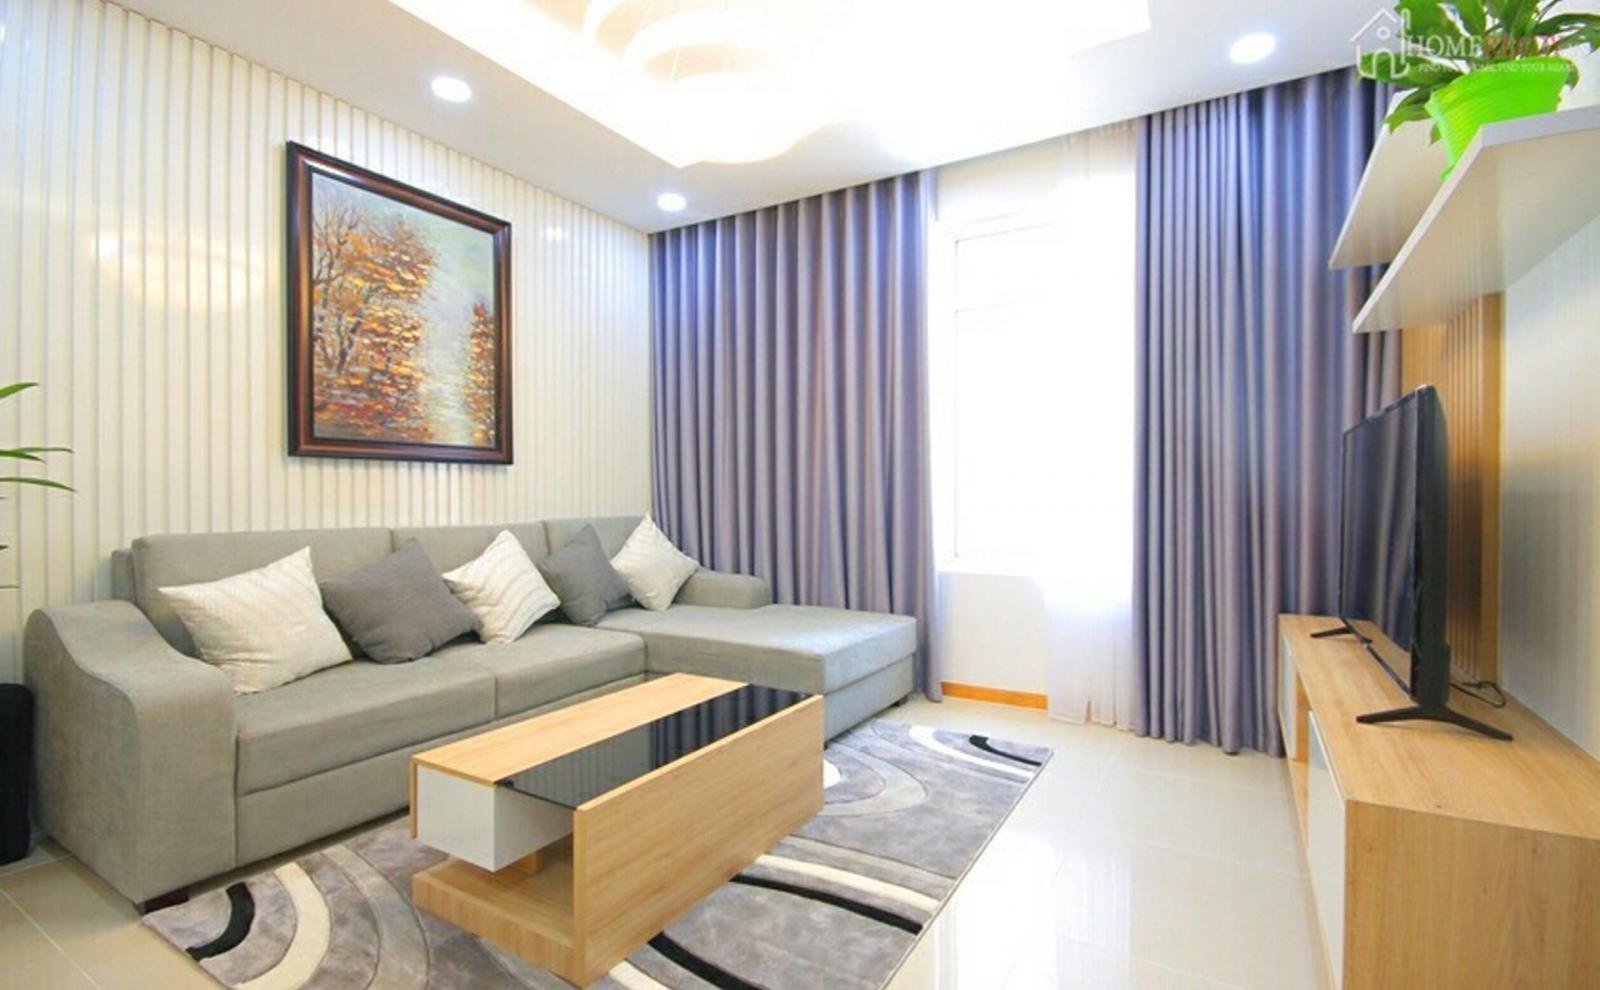 Cho thuê căn hộ chung cư Saigon Pearl, 3 phòng ngủ, lầu cao view đẹp giá 19 triệu/tháng